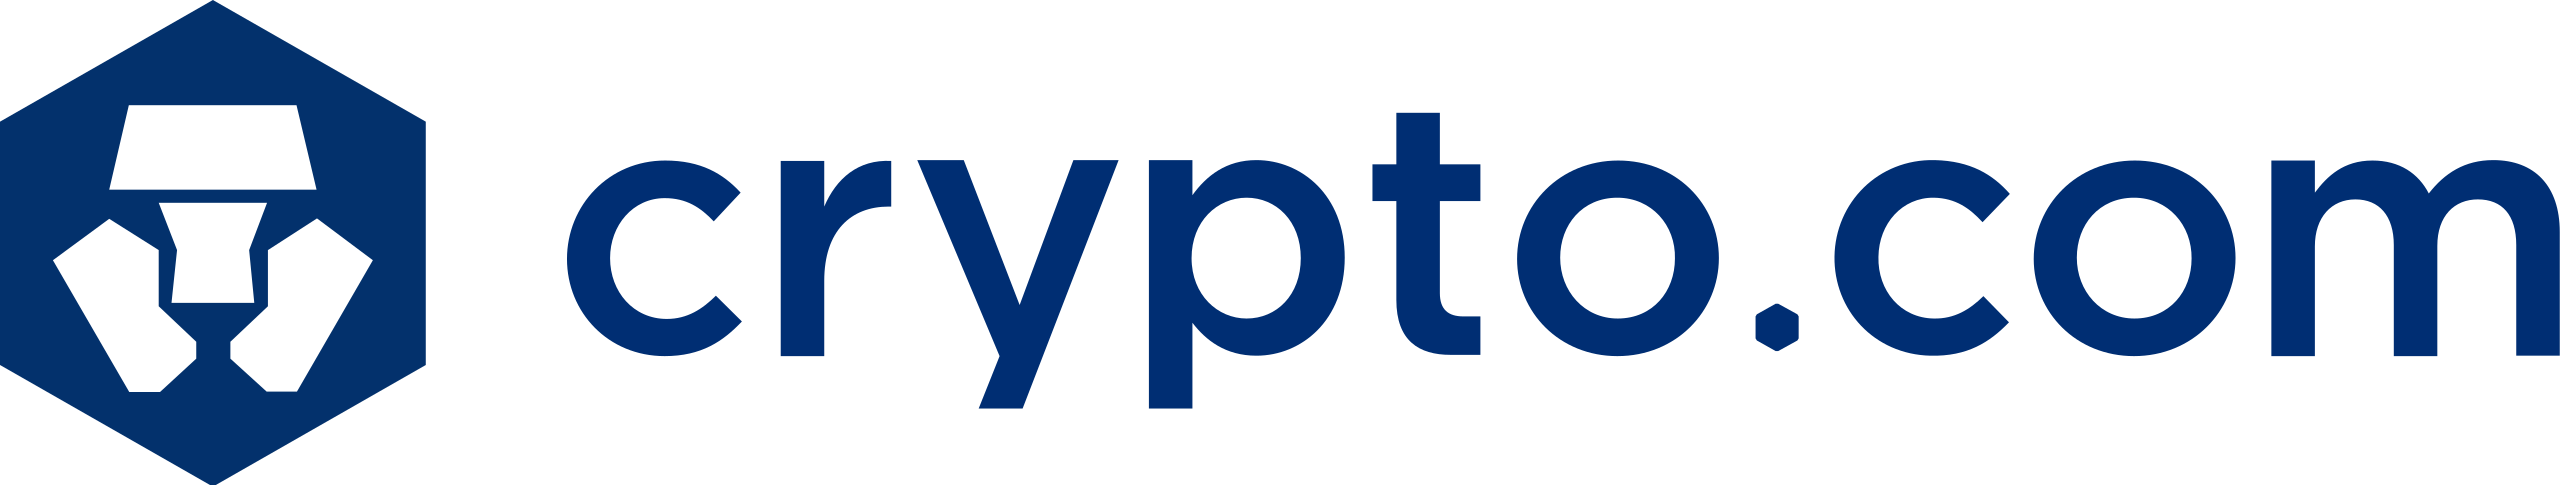 Crypto.com_logo.svg.png